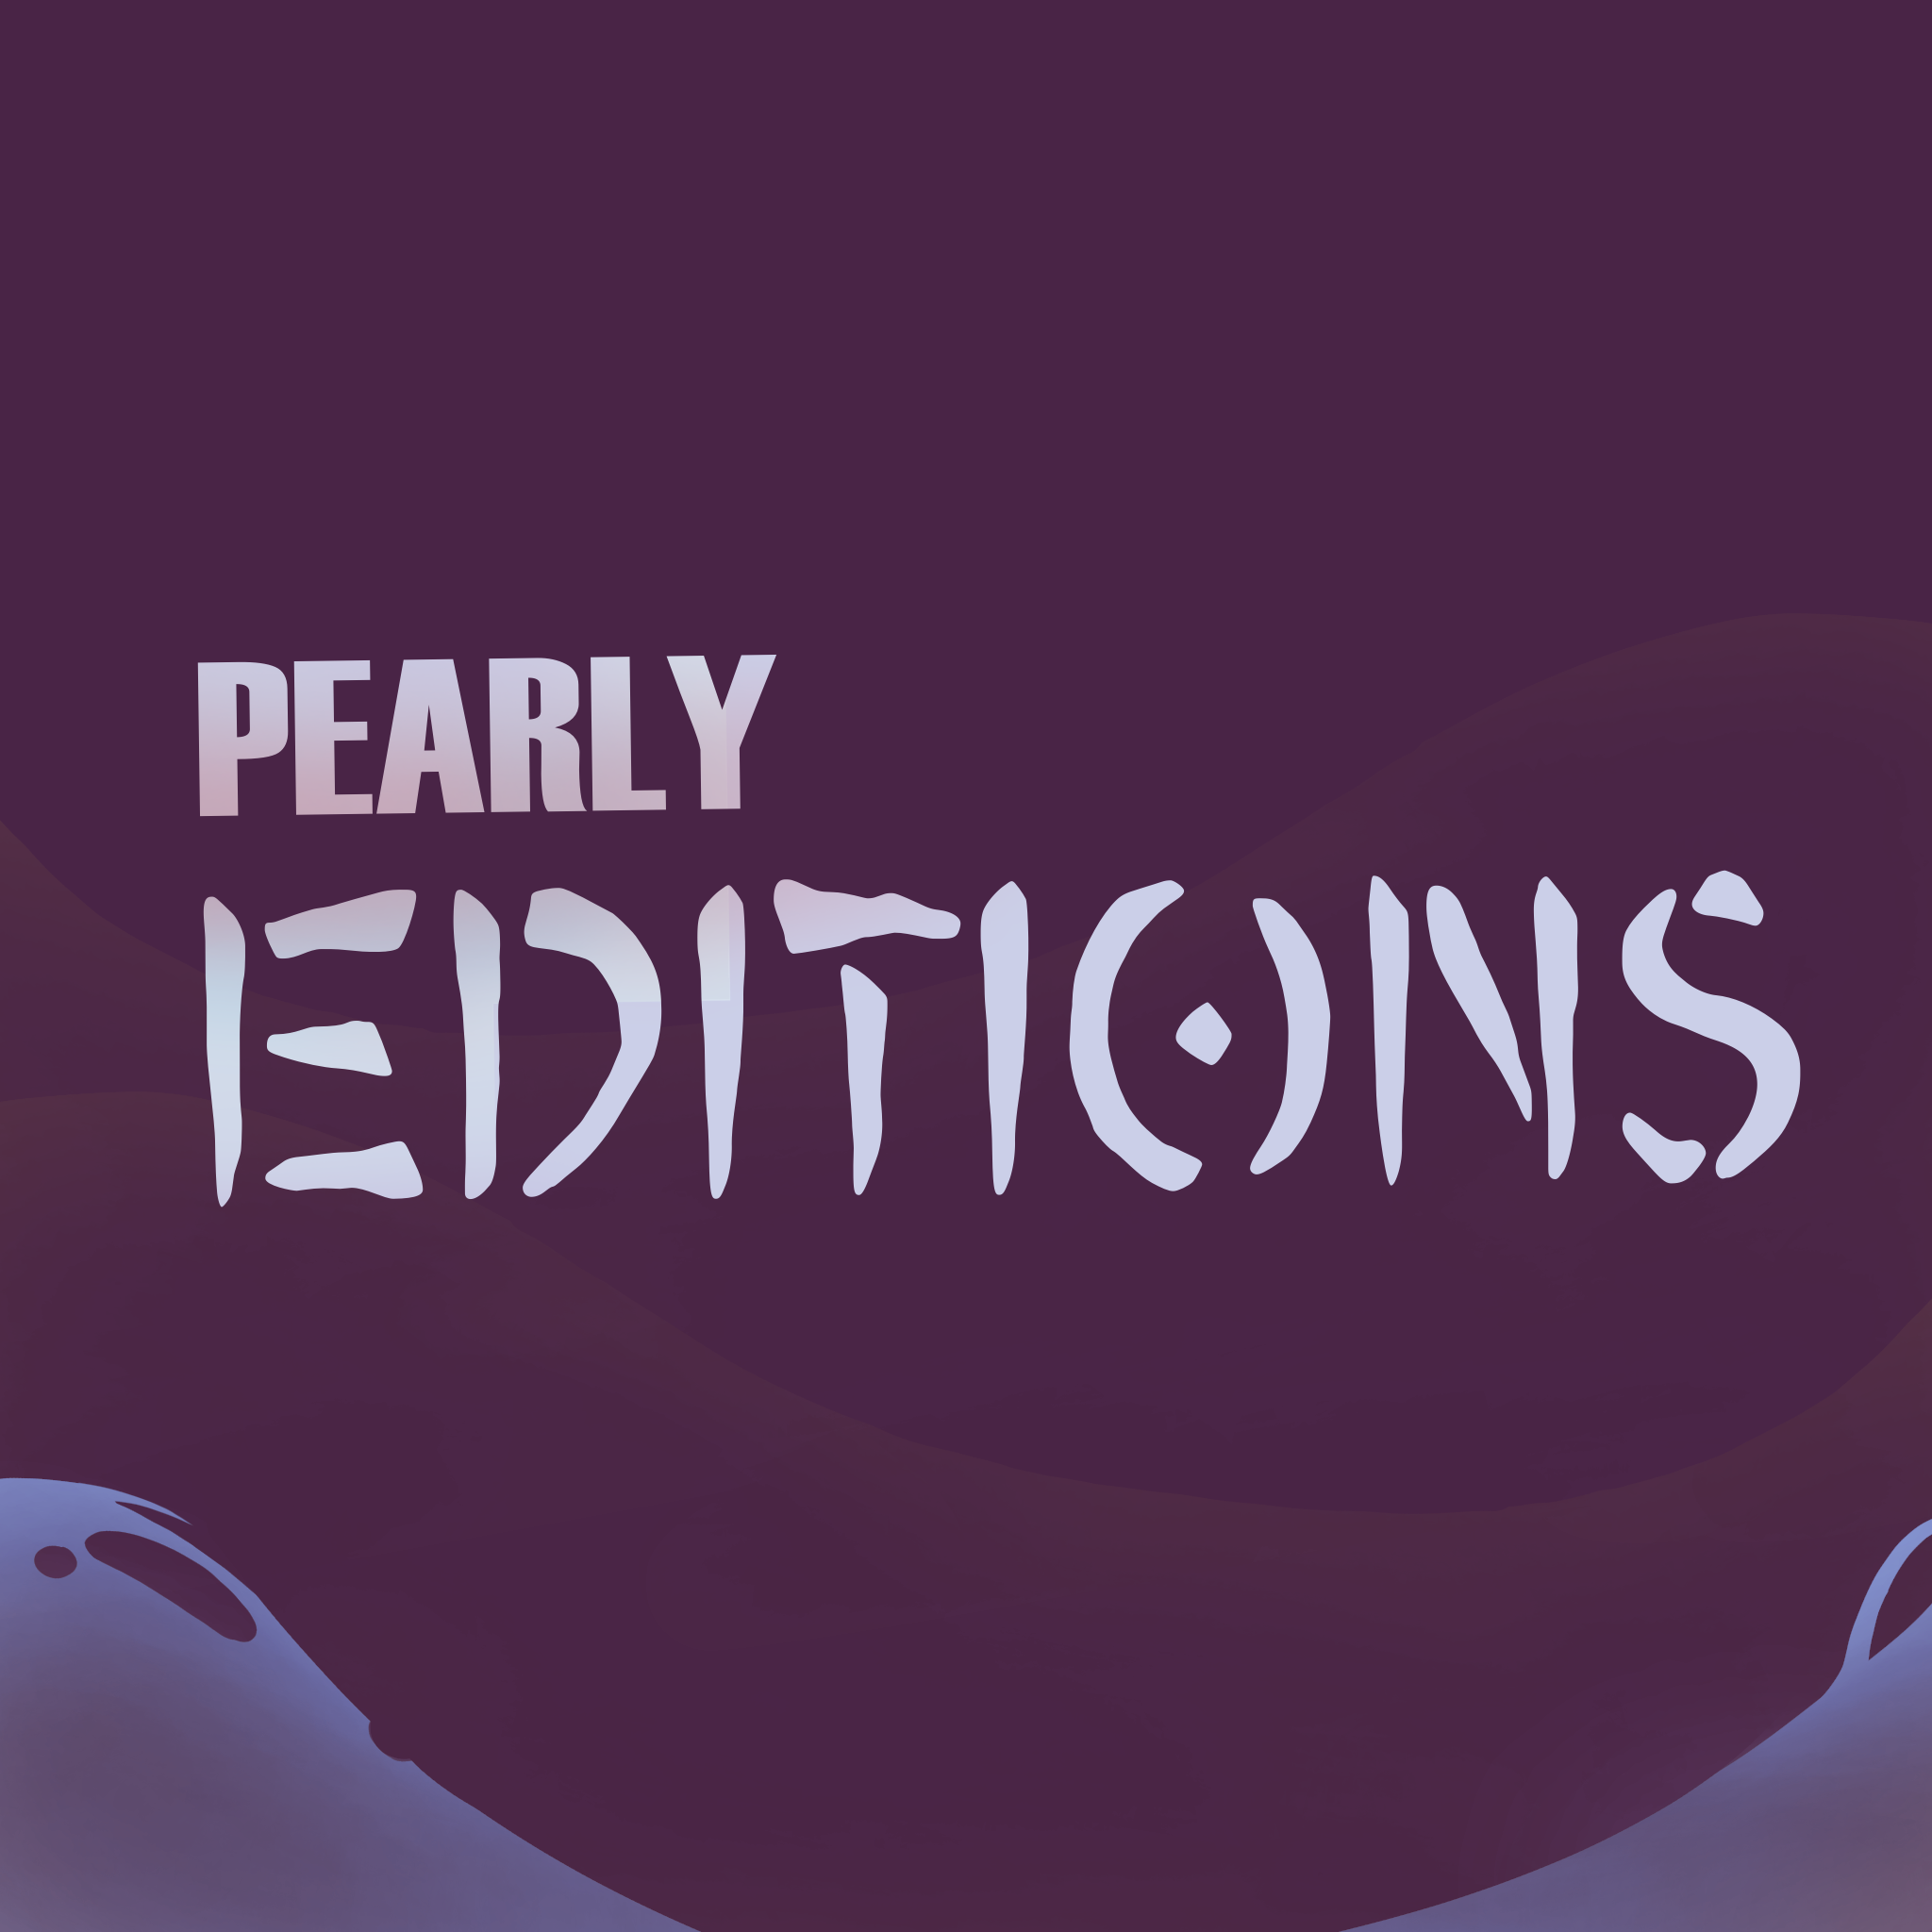 Pearly's editions thumbnail thumbnail